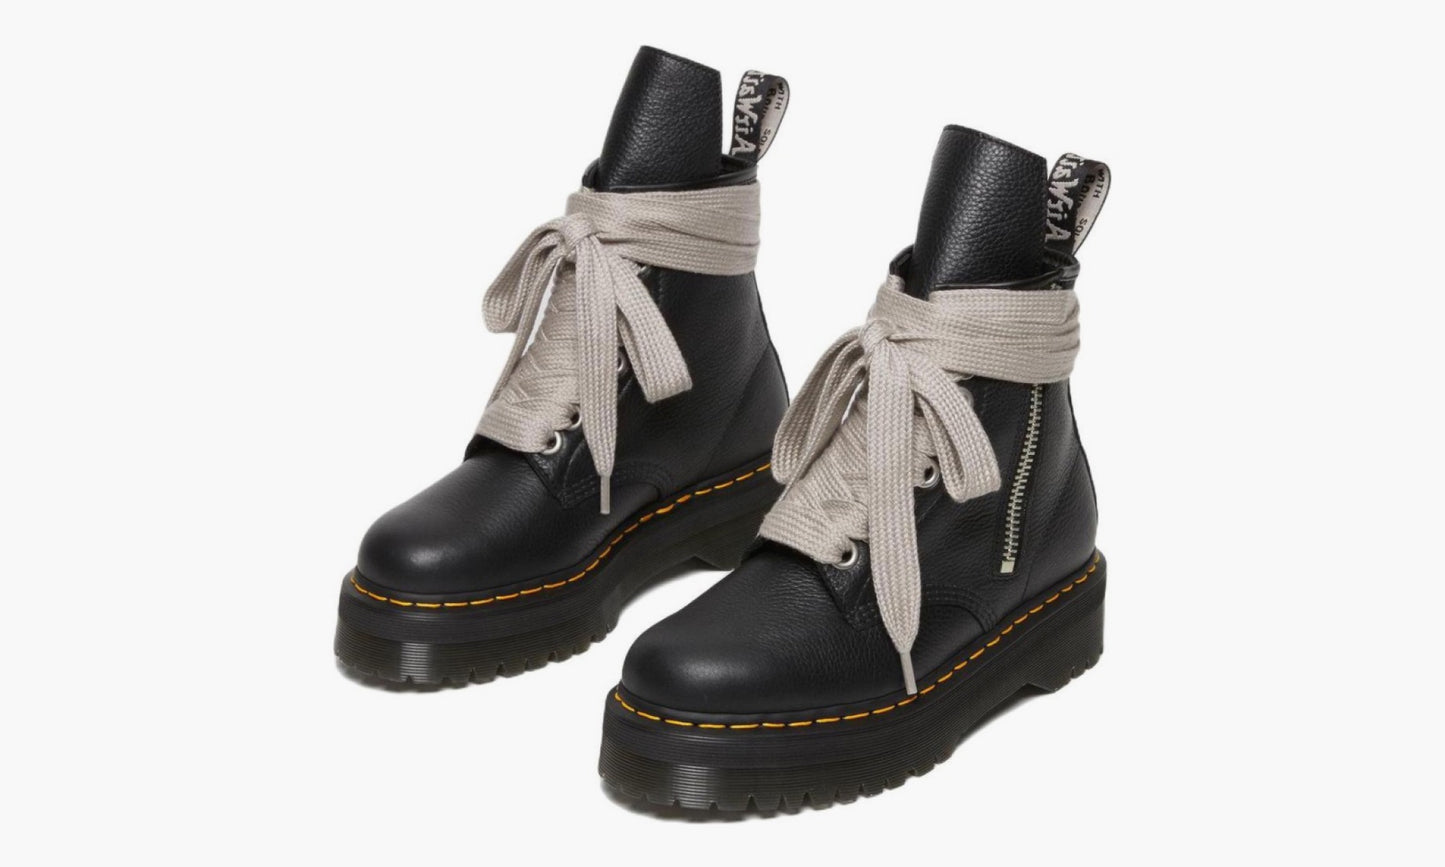 Rick Owens x Dr. Martens 1460 Leather Platform Boots “Black” - 27978001 | Grailshop